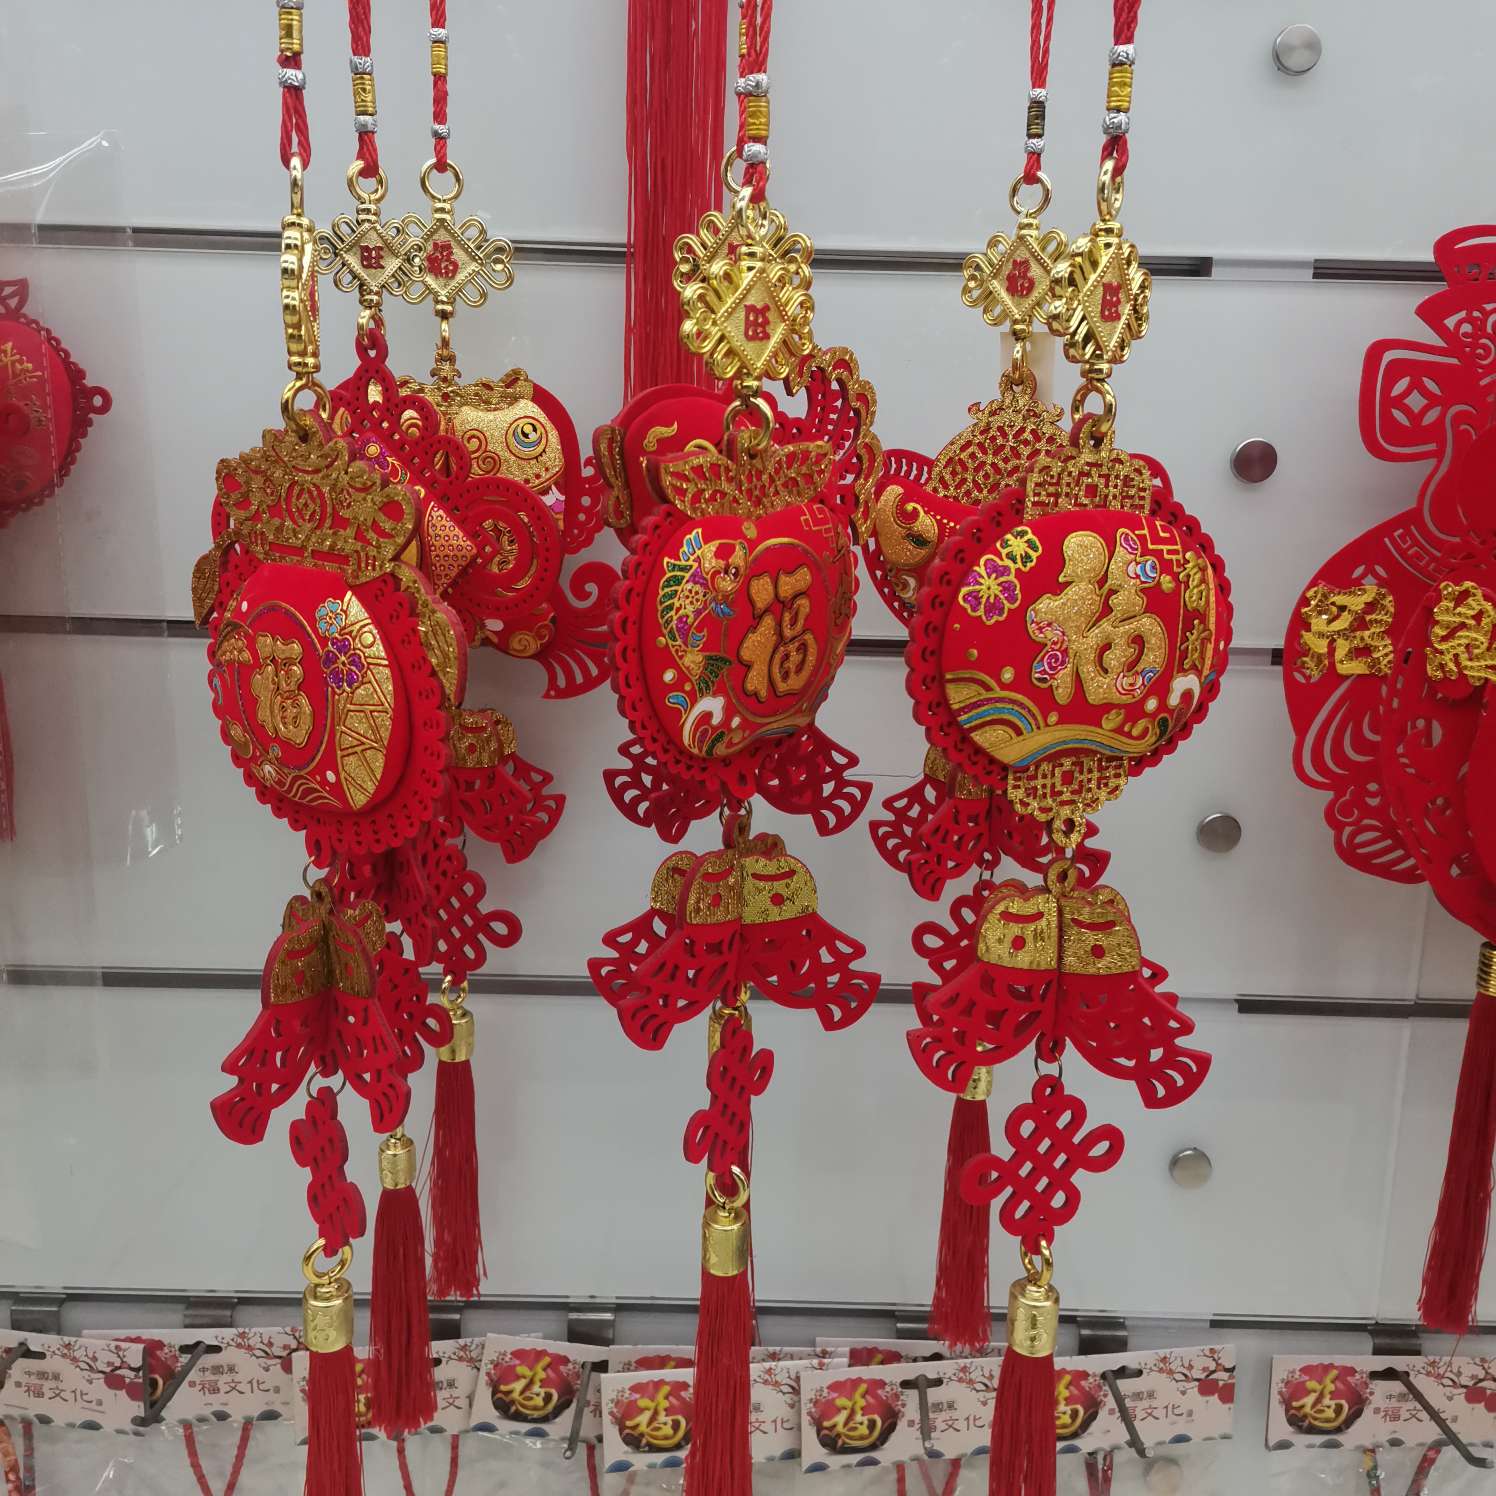 中国结福字厂家直销客厅装饰新款年货特色工艺品礼品